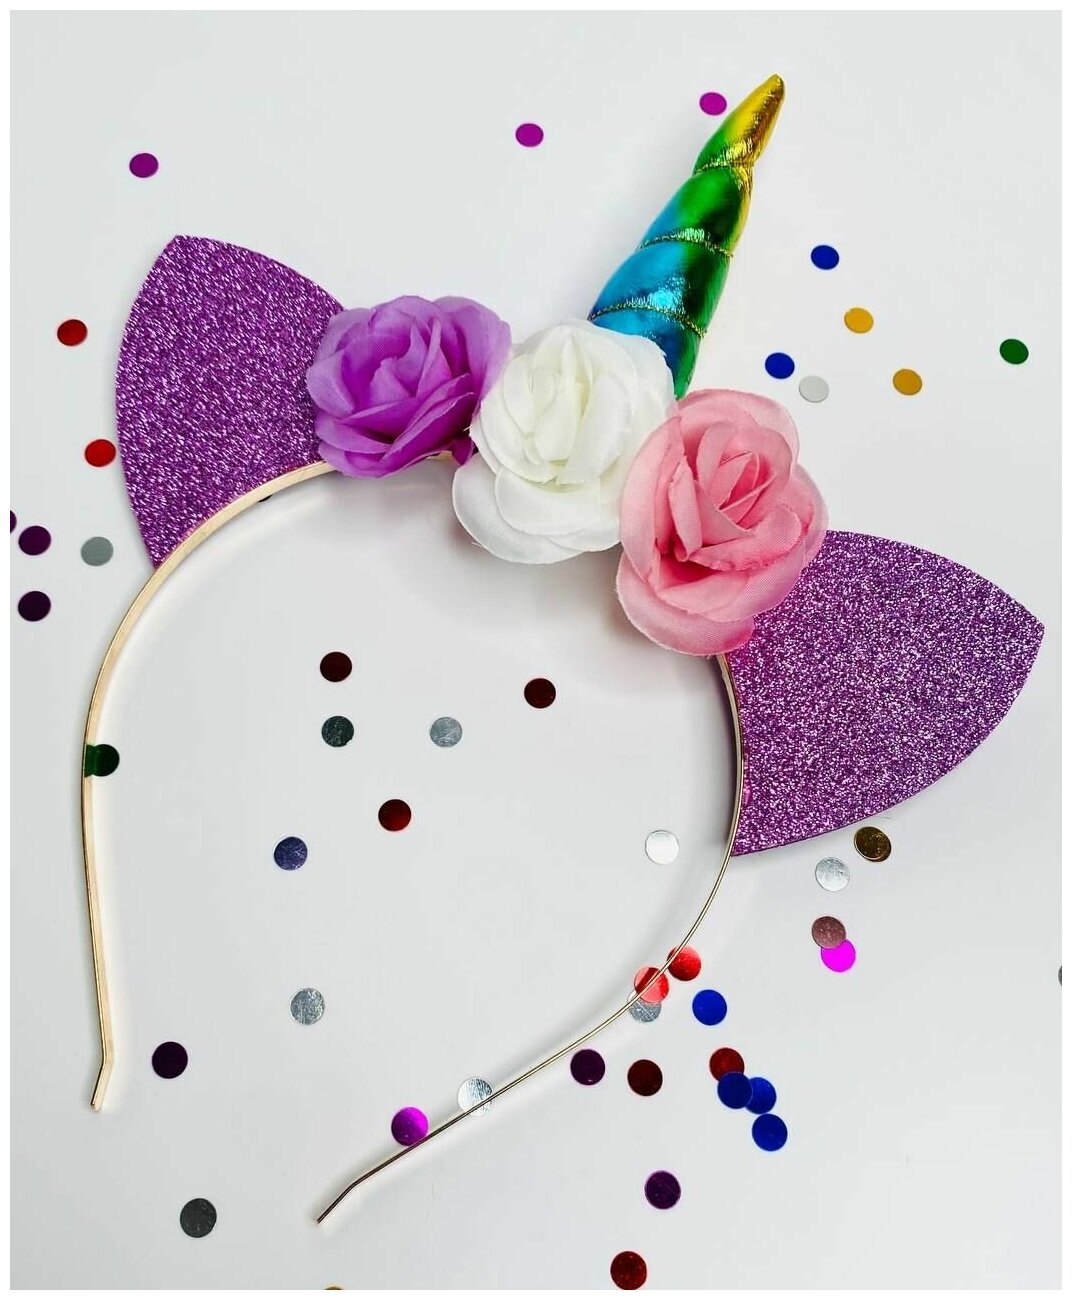 Праздничный Ободок для волос детский с ушками радужным единорог, фиолетовый блестящий с радужным рогом с цветами